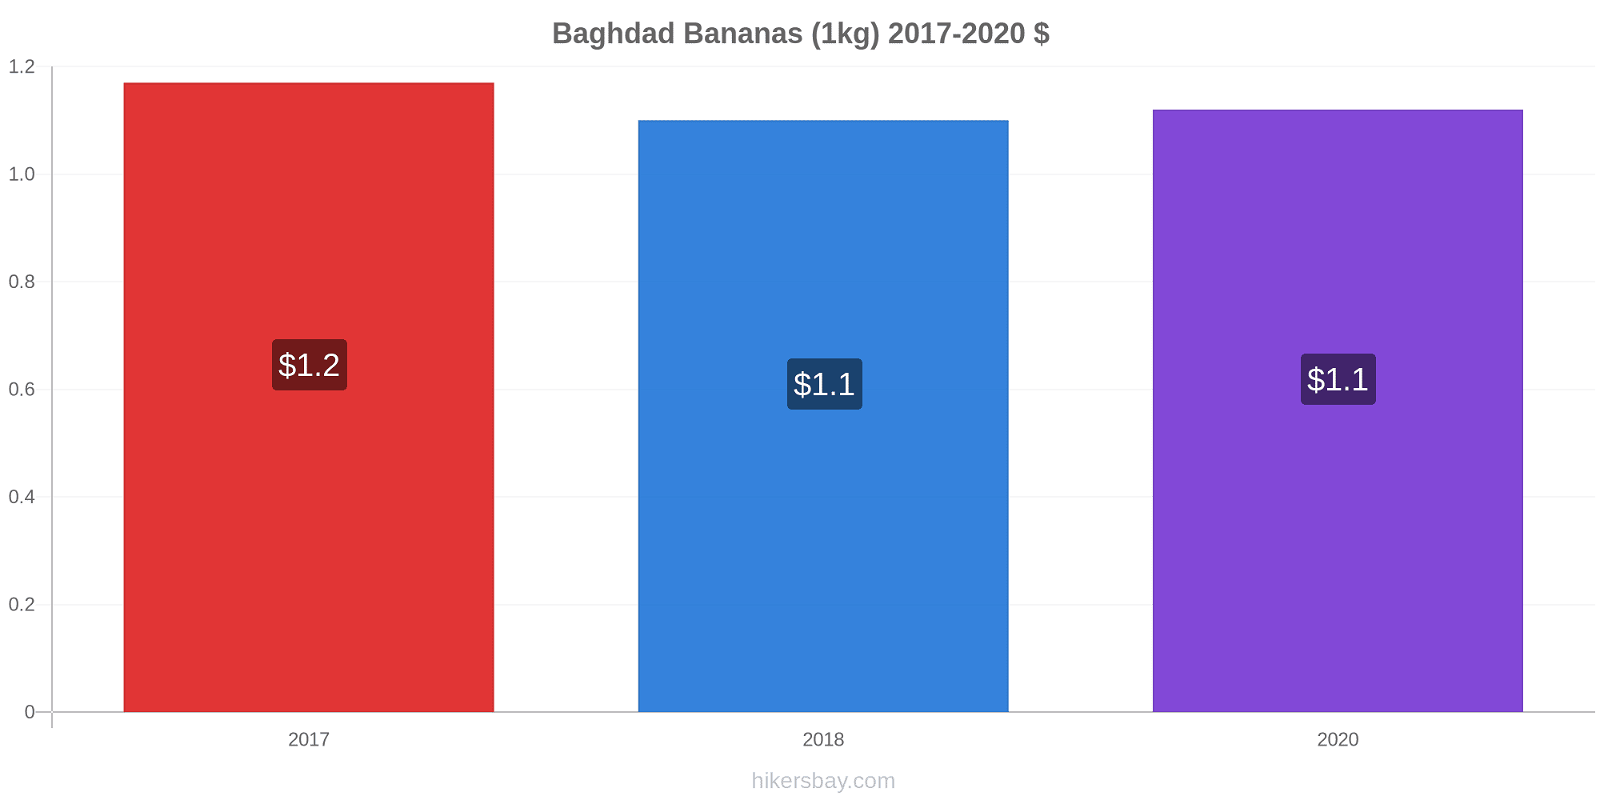 Baghdad price changes Bananas (1kg) hikersbay.com